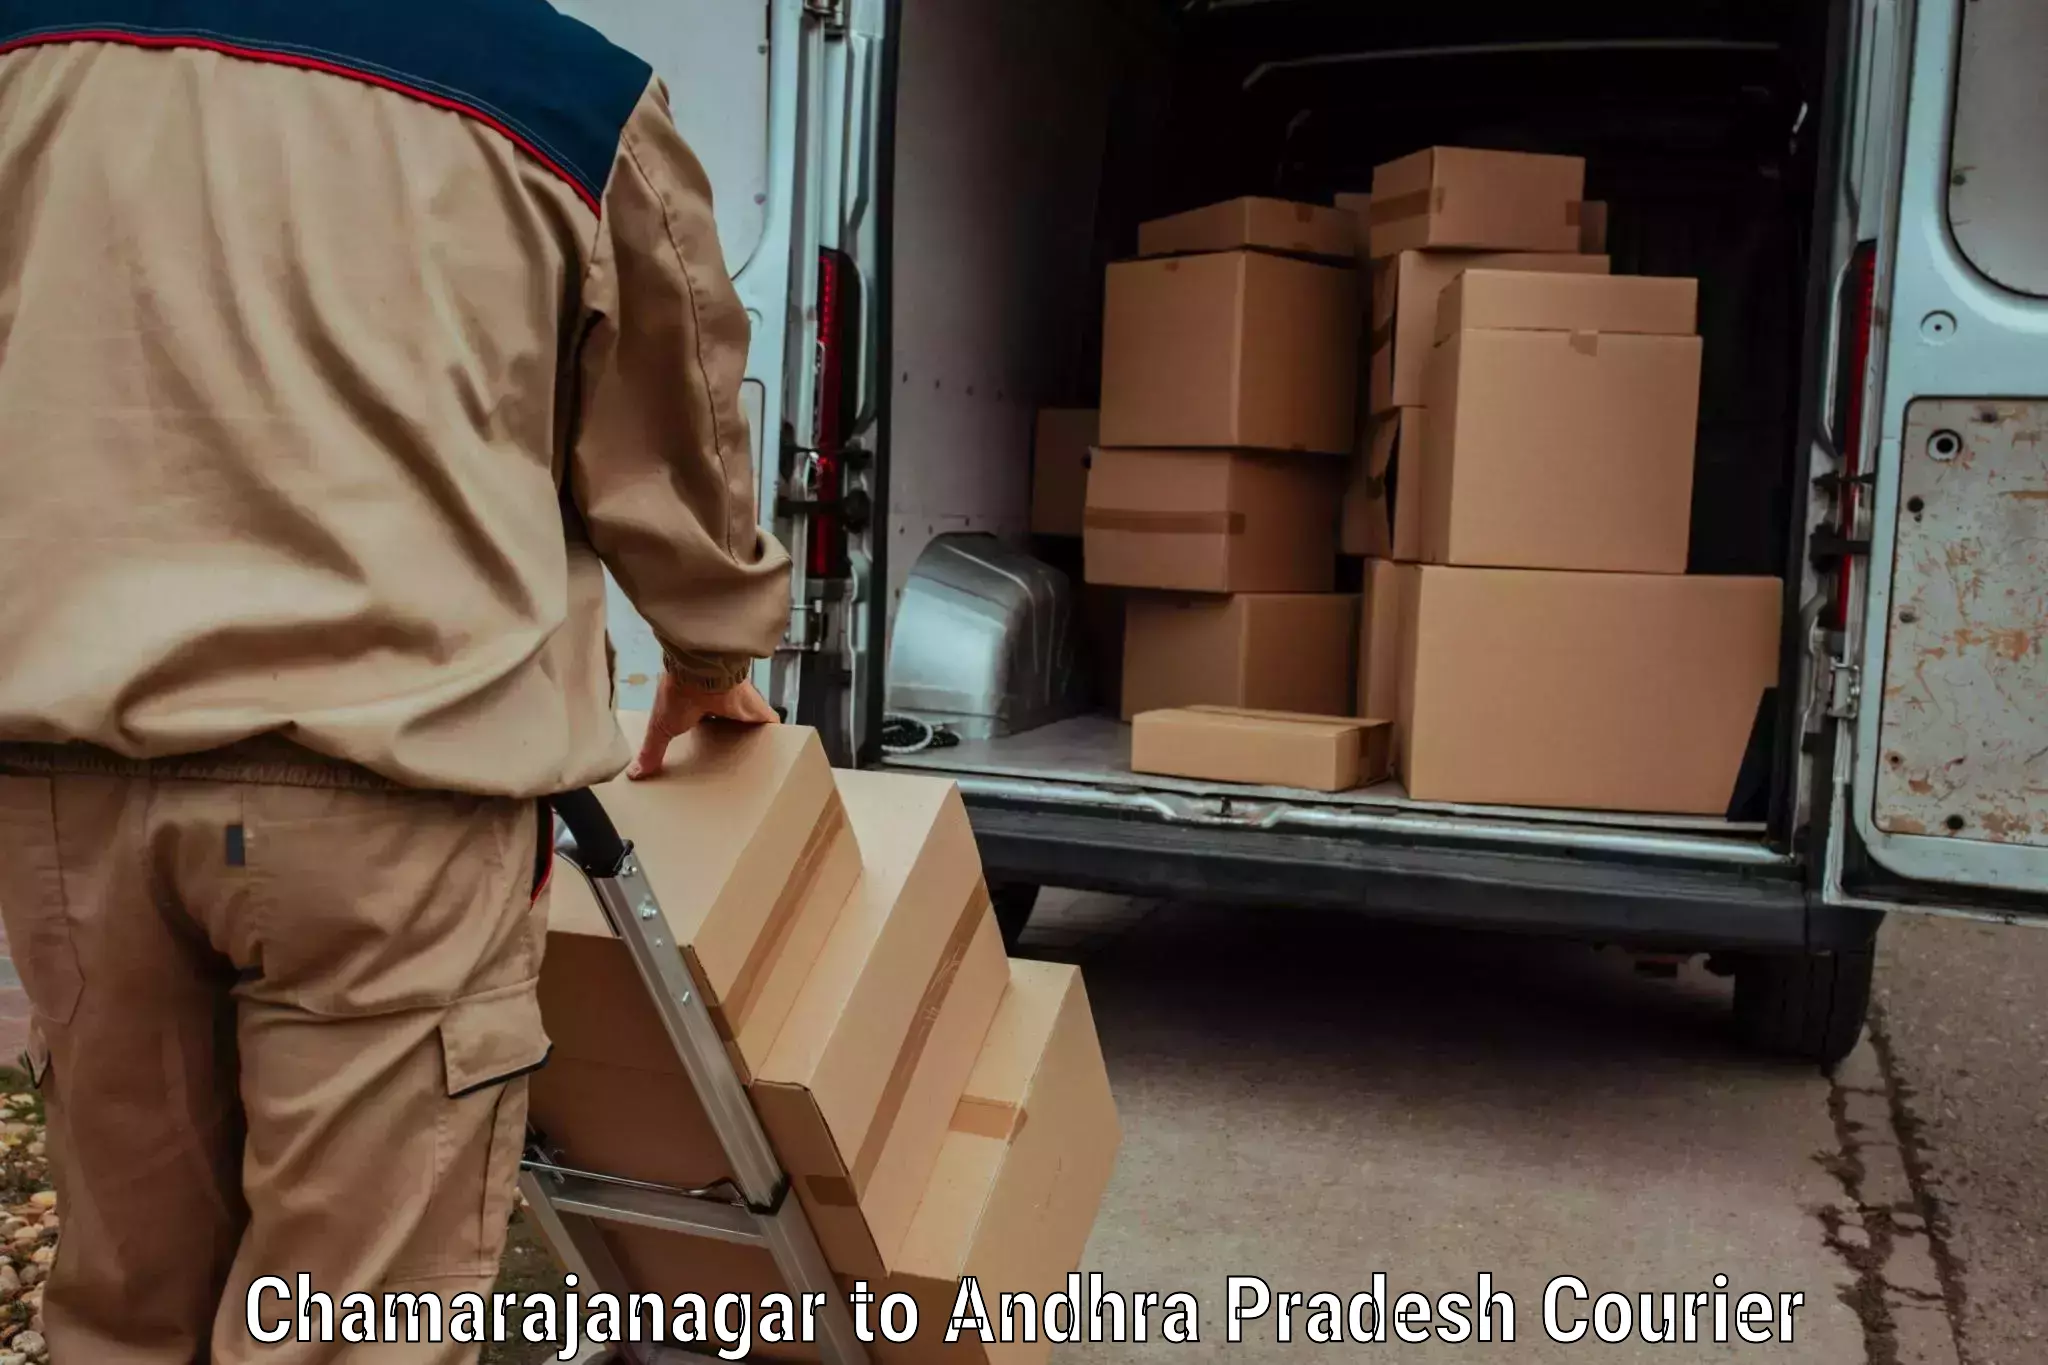 24-hour courier services in Chamarajanagar to Venkatagiri